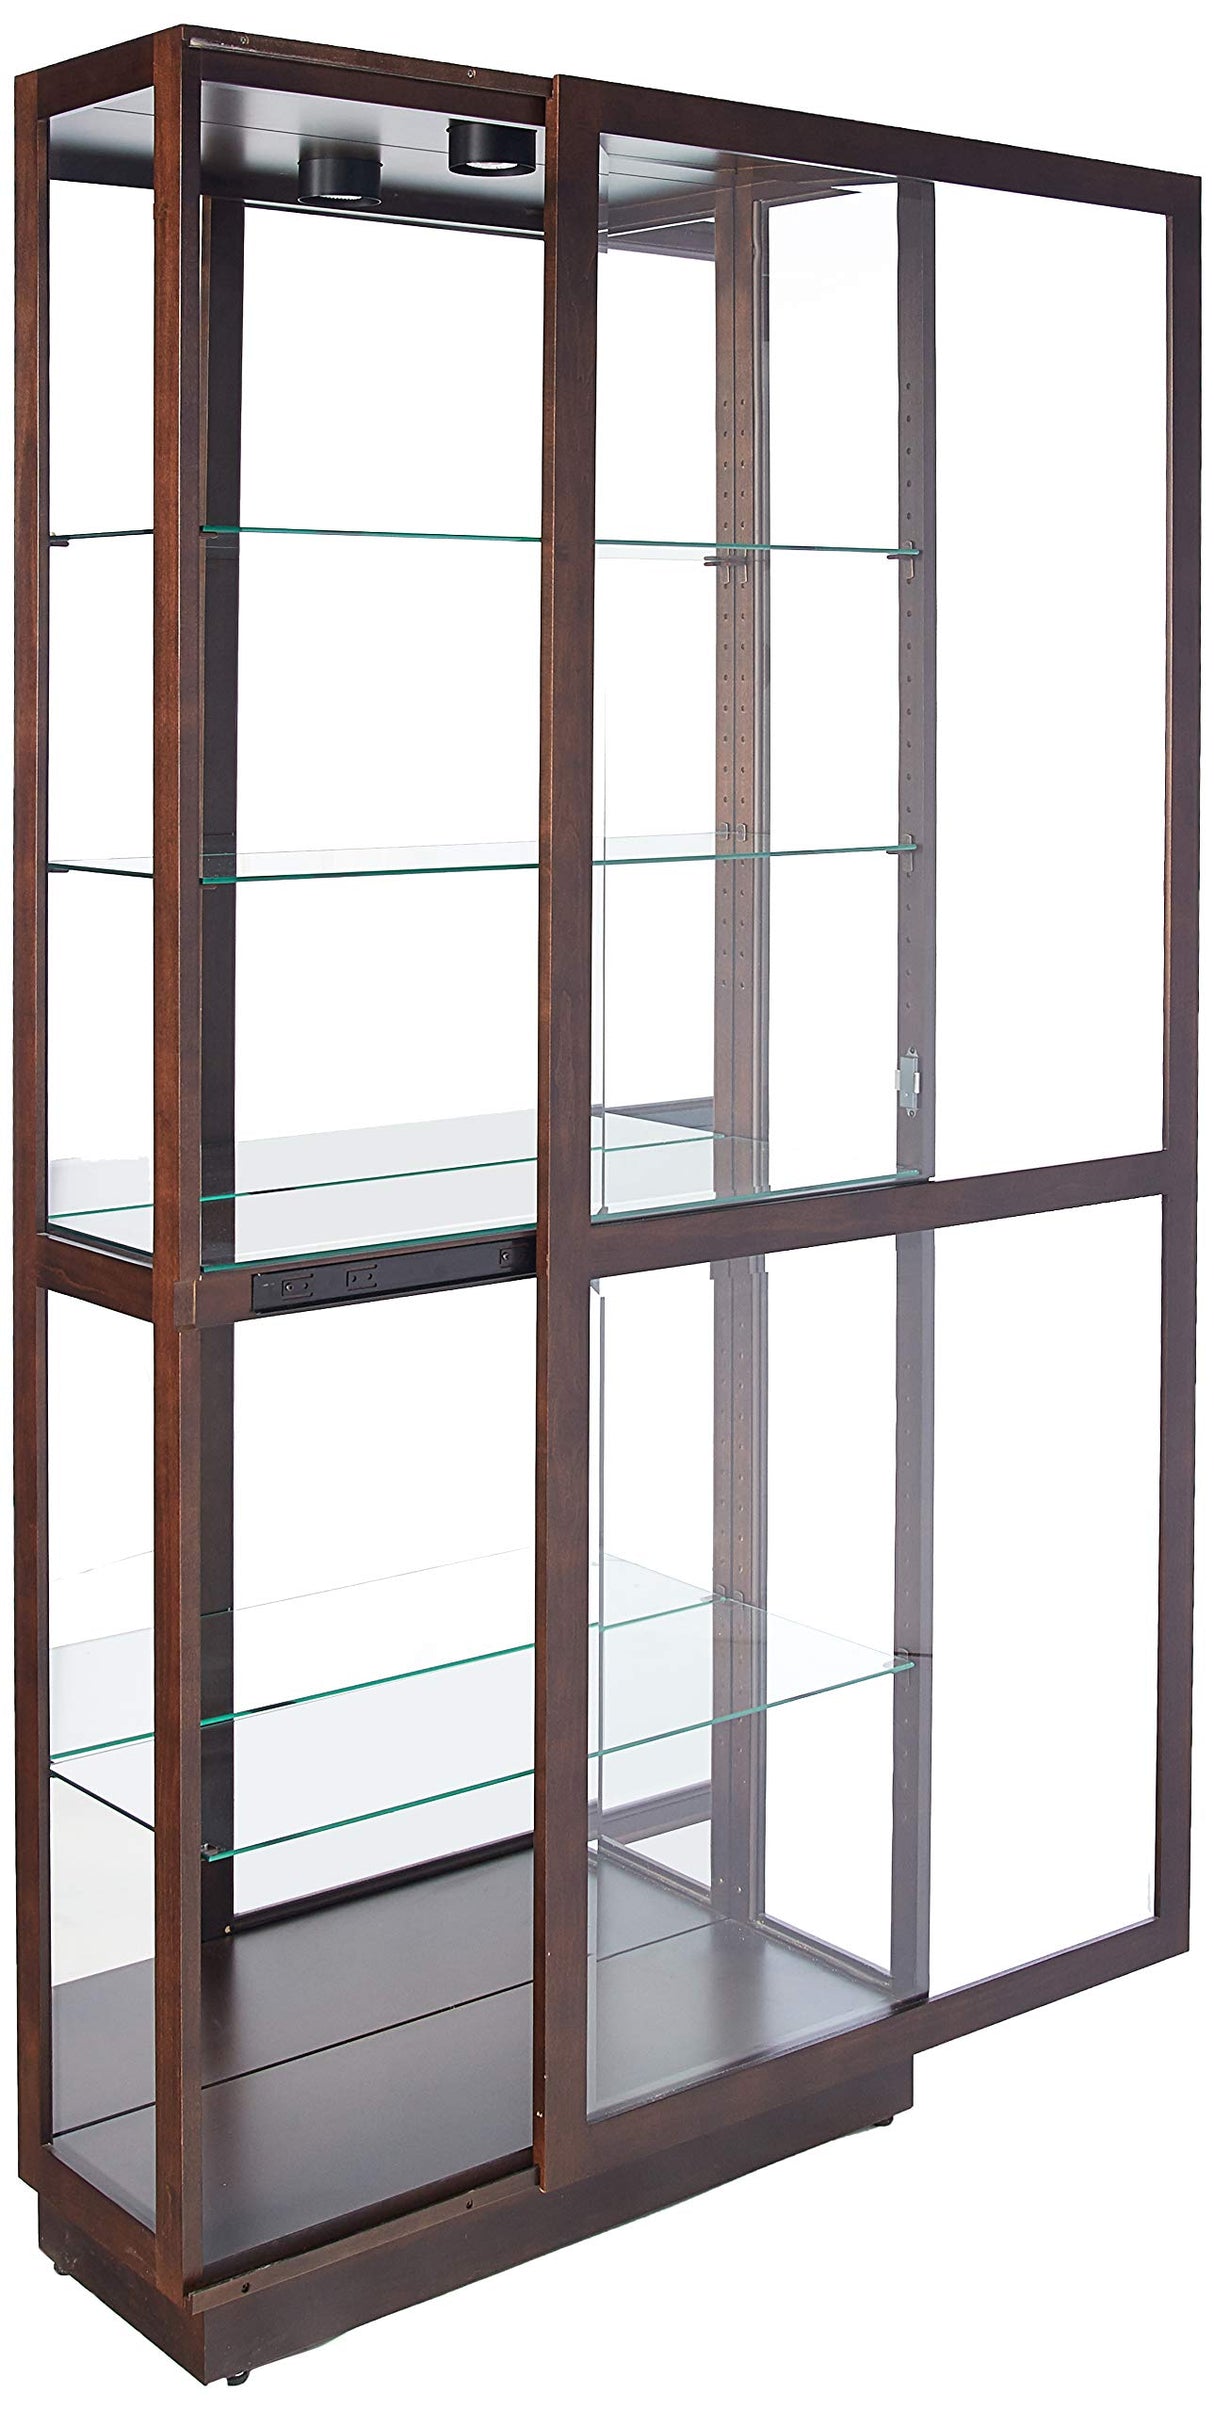 Howard Miller Jayden Curio Cabinet 680-575 - Espresso Finish Home Decor, Four Glass Shelves, Five Level Display Case, Locking Slide Door, LED Light Switch